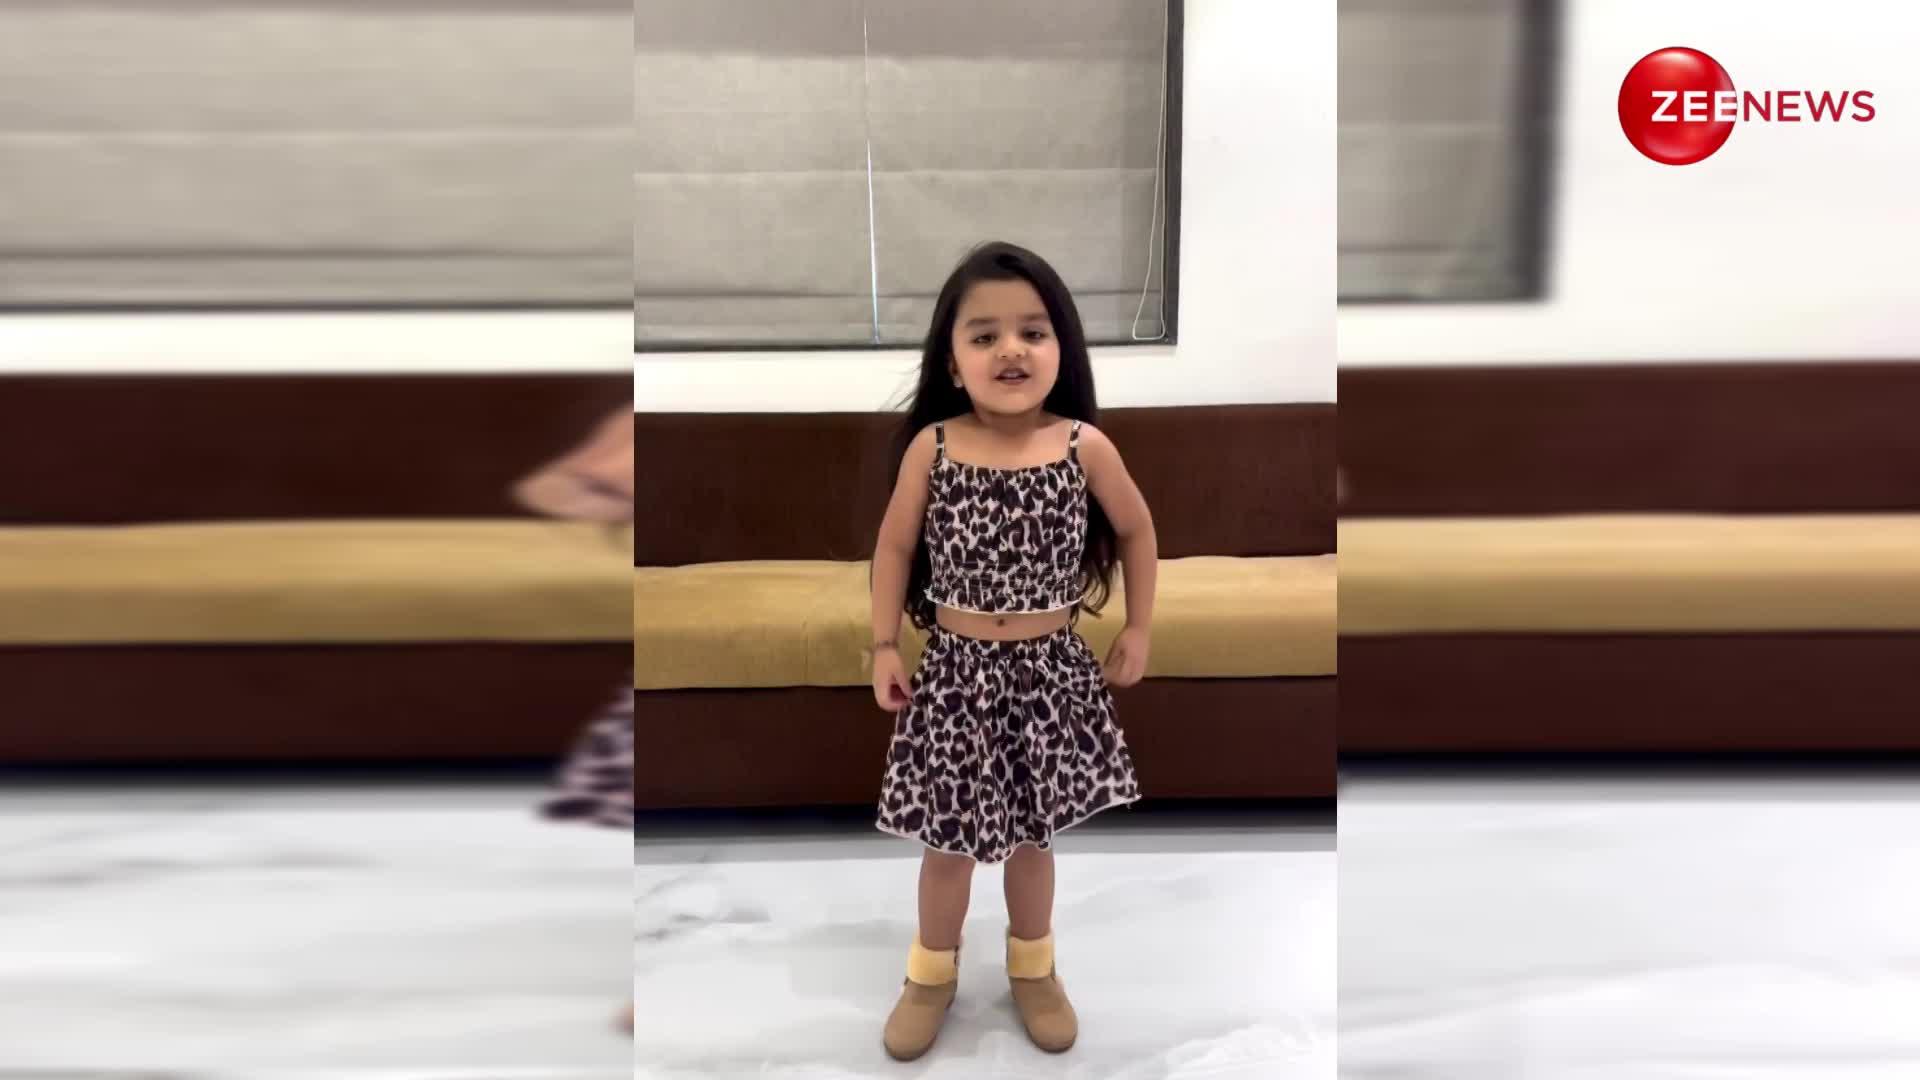 वाह वाह! 4 साल की बच्ची ने Neha Kakkar के गाने पर किया धमाकेदार डांस, एक्सप्रेशन जीत लेंगे आपका दिल